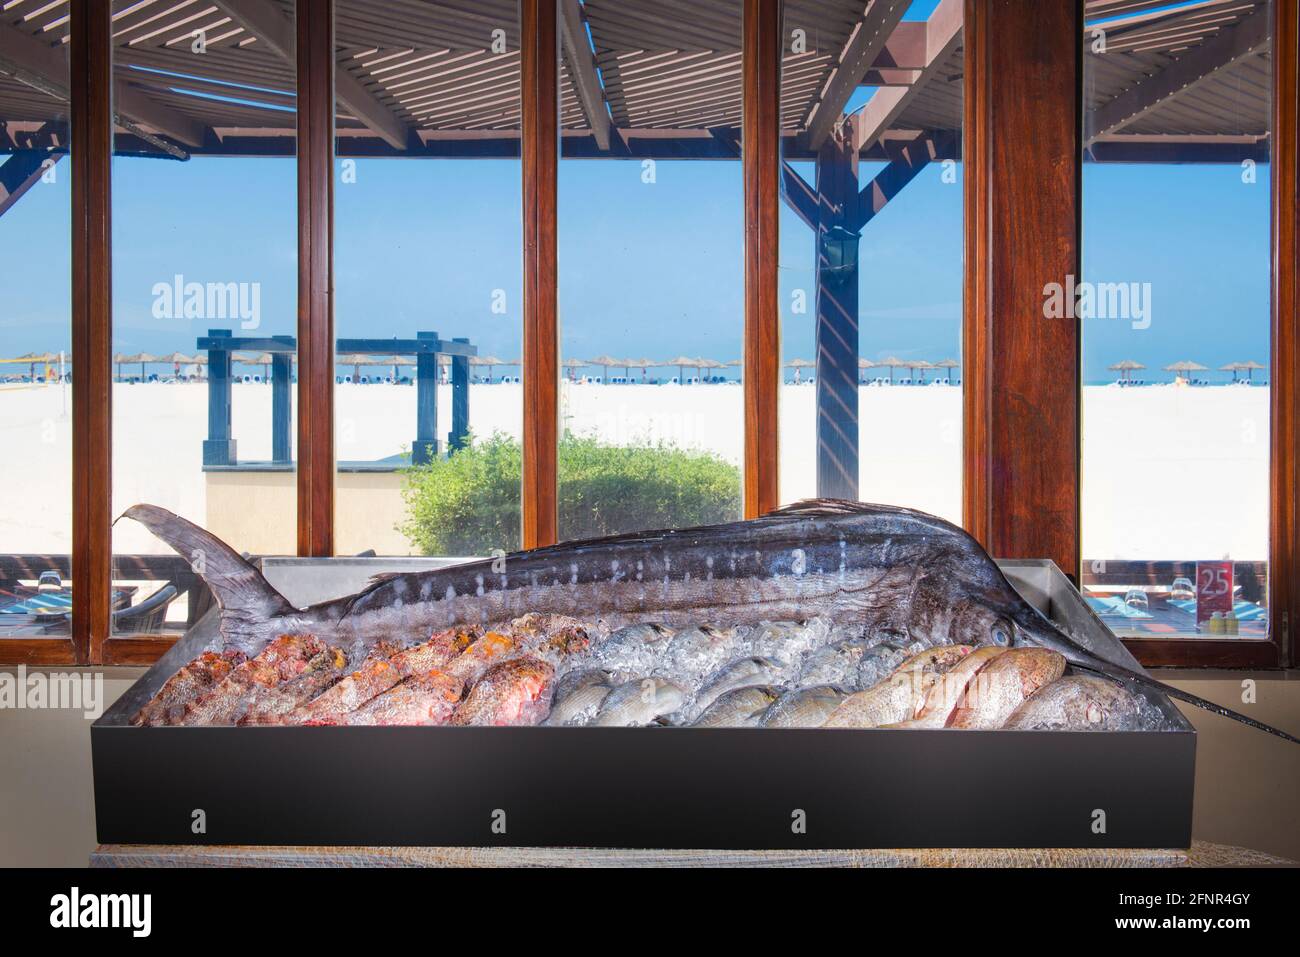 Enorme pesce spada in mostra in un ristorante sulla spiaggia. Foto Stock